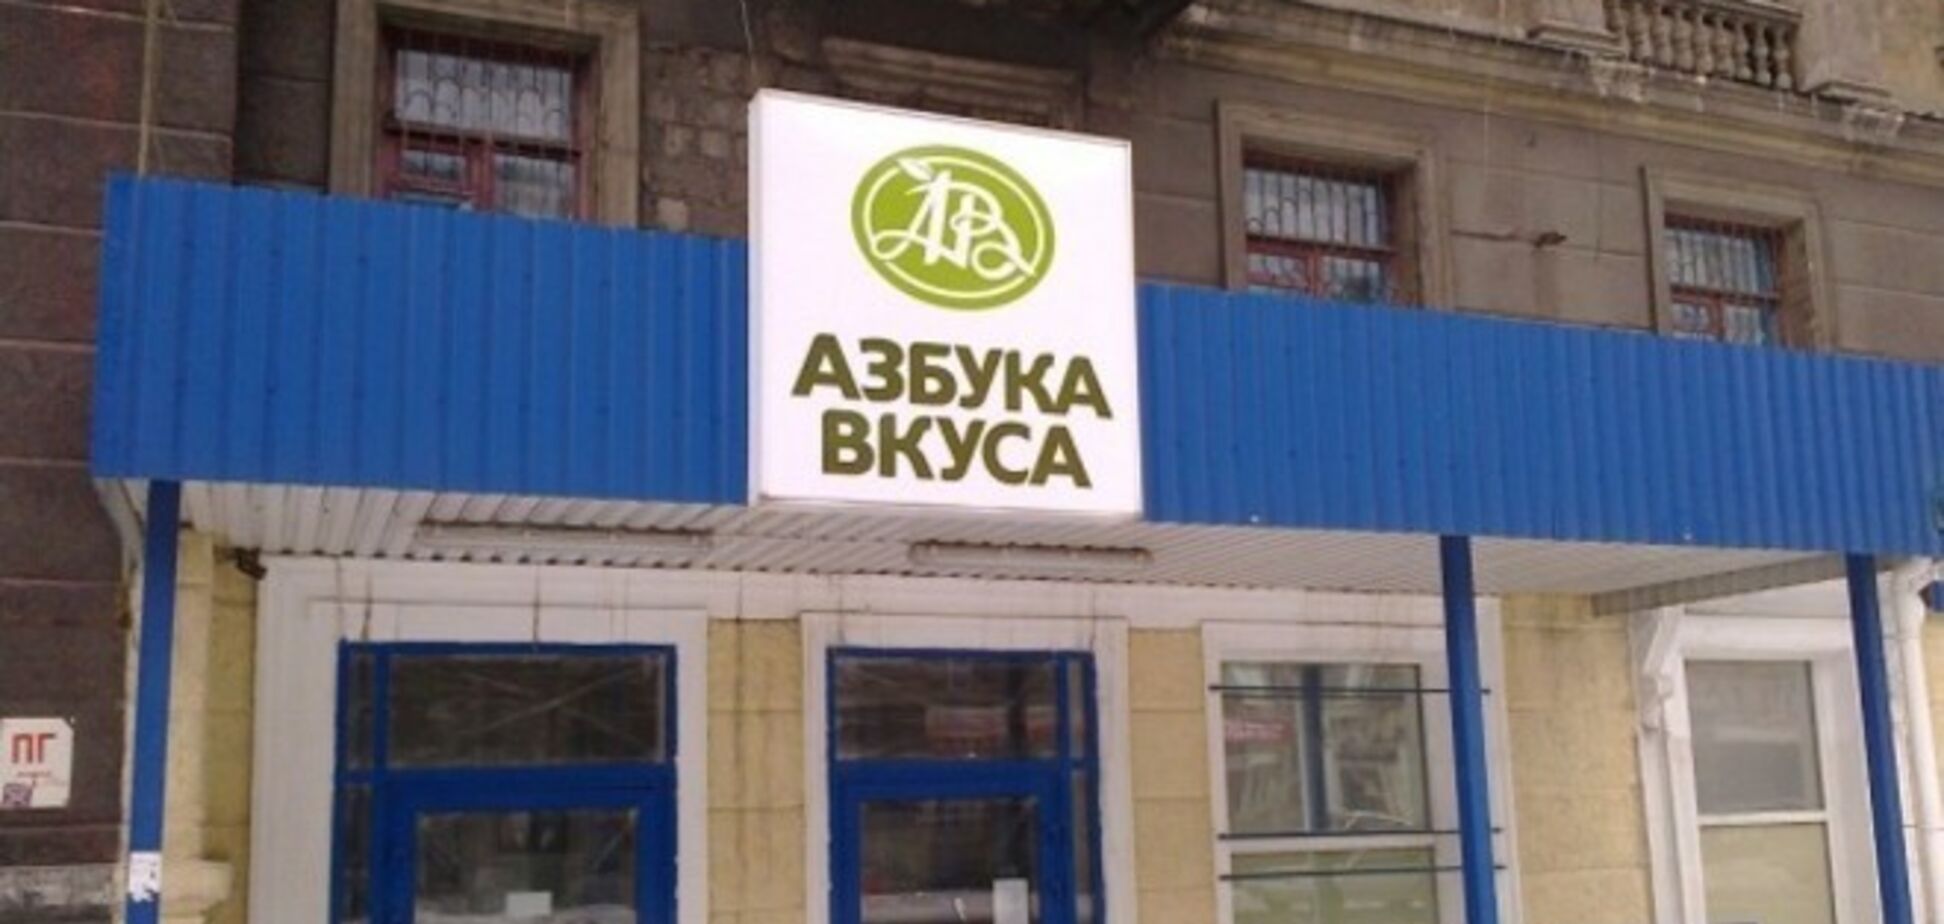 В оккупированном Алчевске открылось два супермаркета под элитным российским брендом 'Азбука вкуса': фотофакт